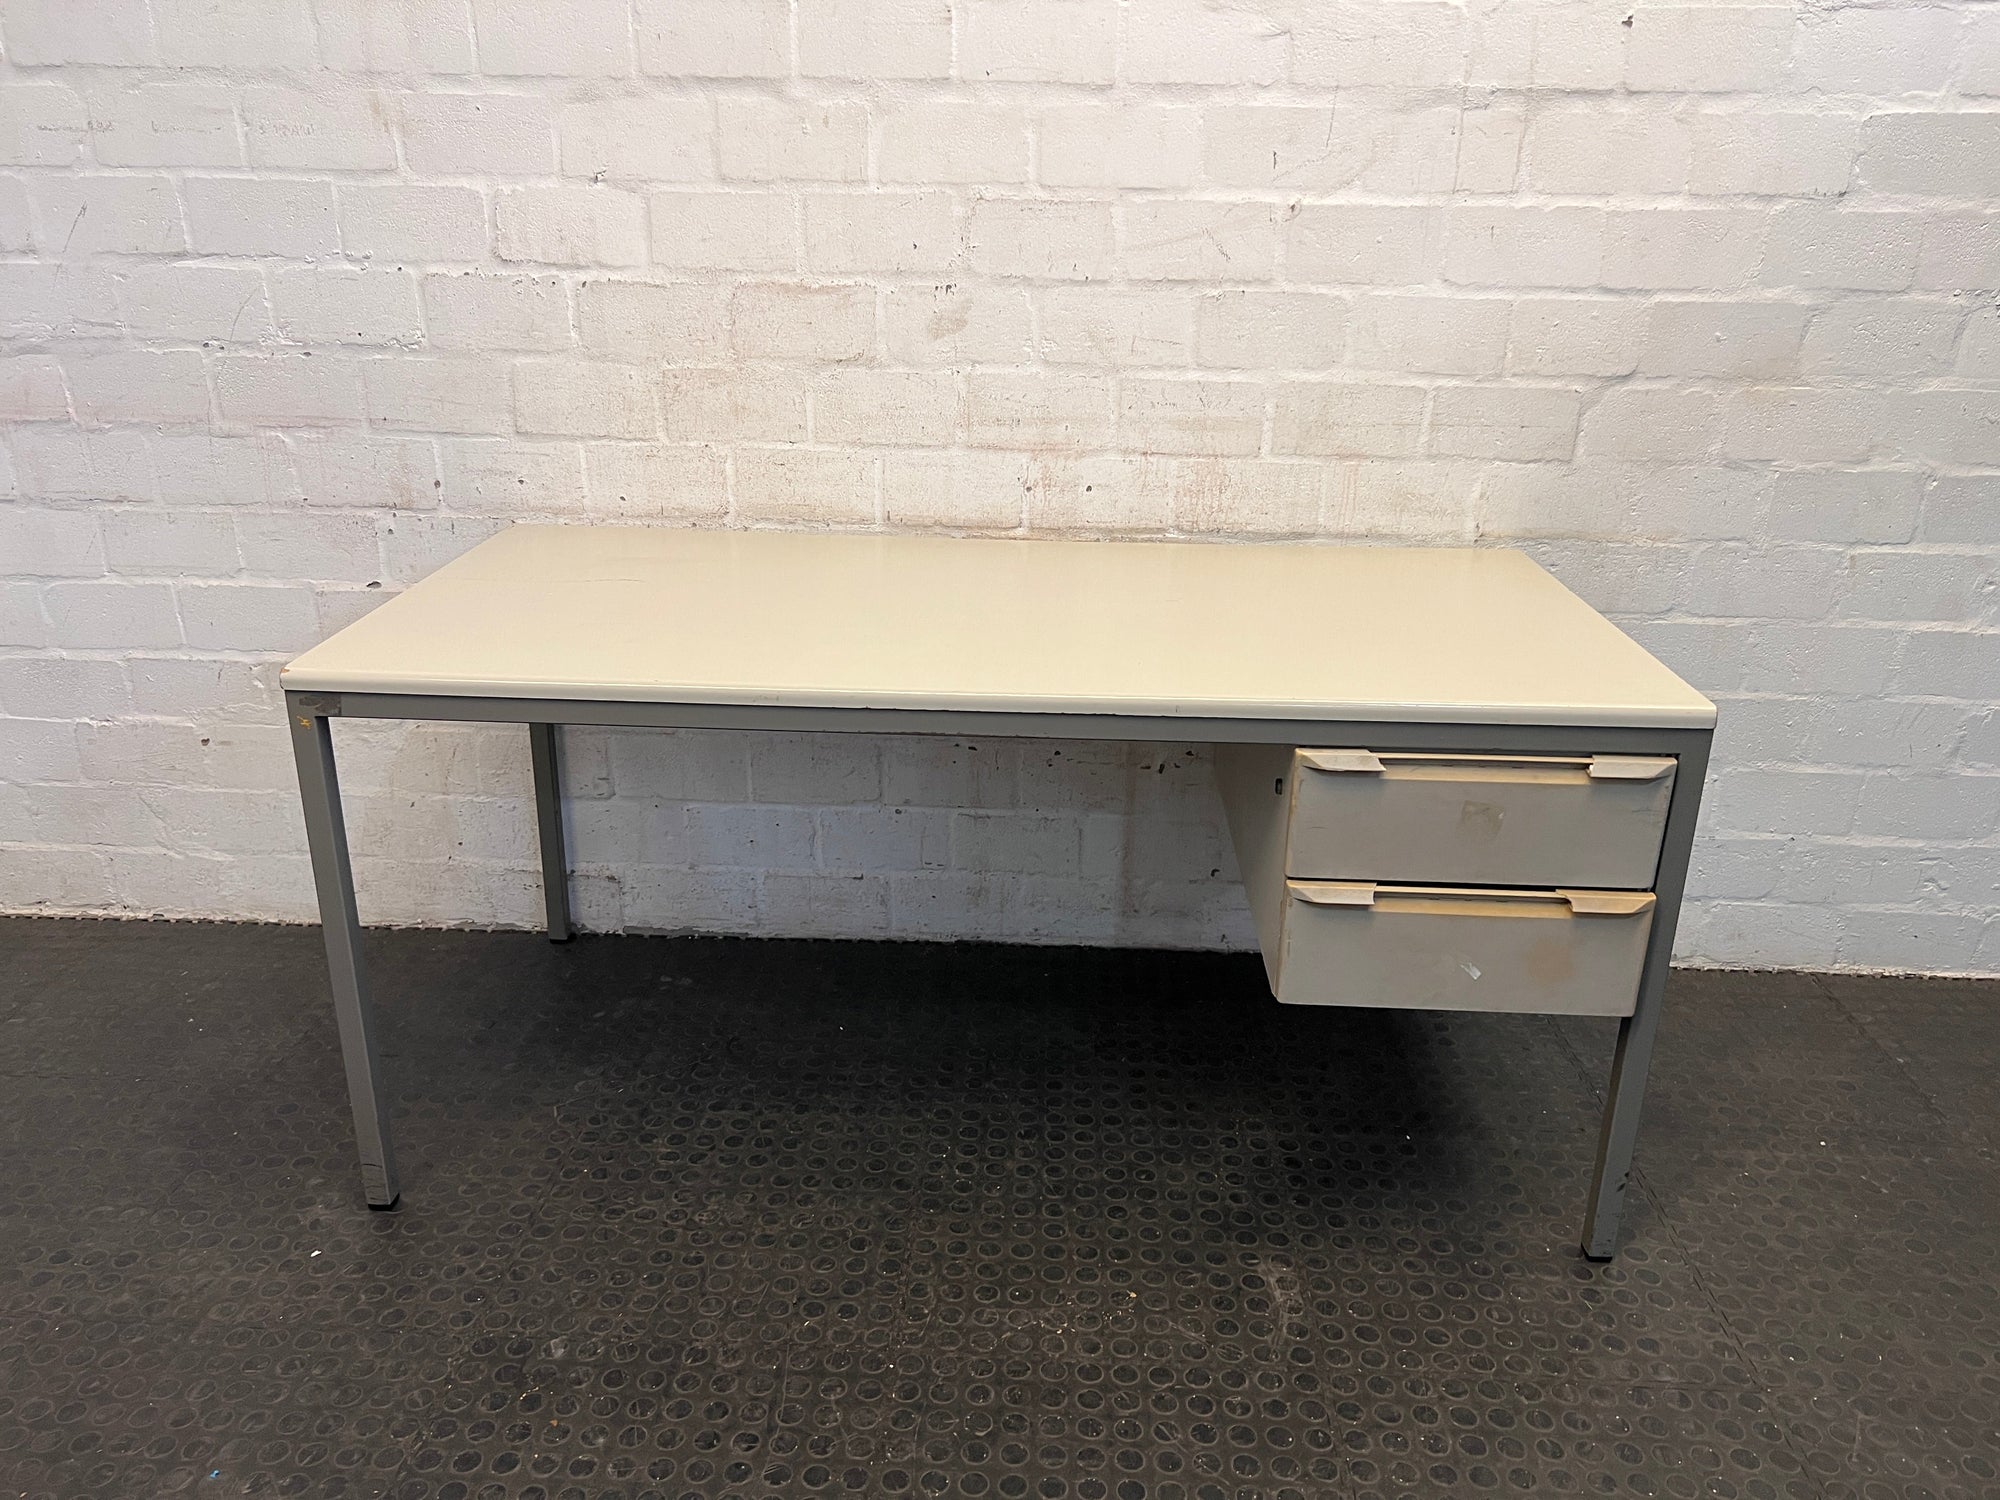 Grey Steel Legged Two Drawer Desk (RHS) 160 x 80cm